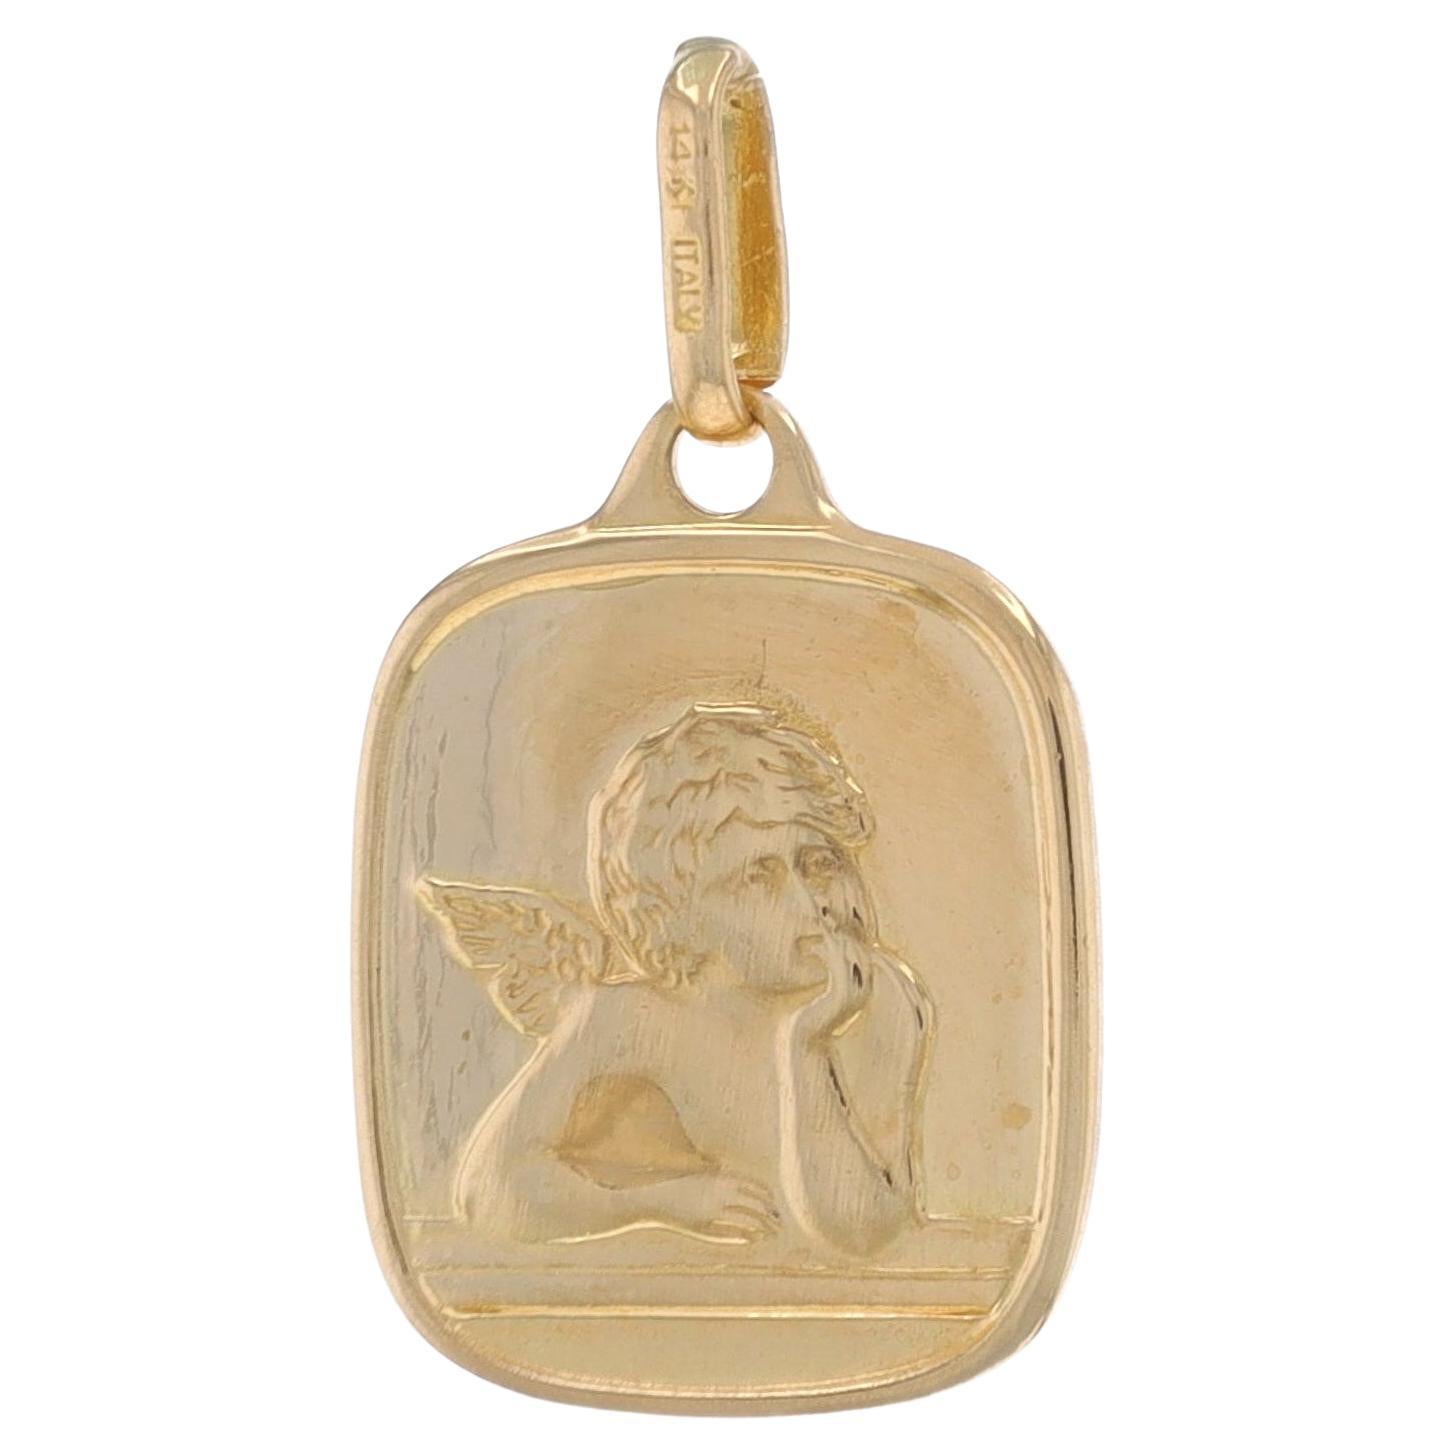 Pendentif chérubin en or jaune 14 carats, cadeau de foi des gardiens de l'ange, Italie